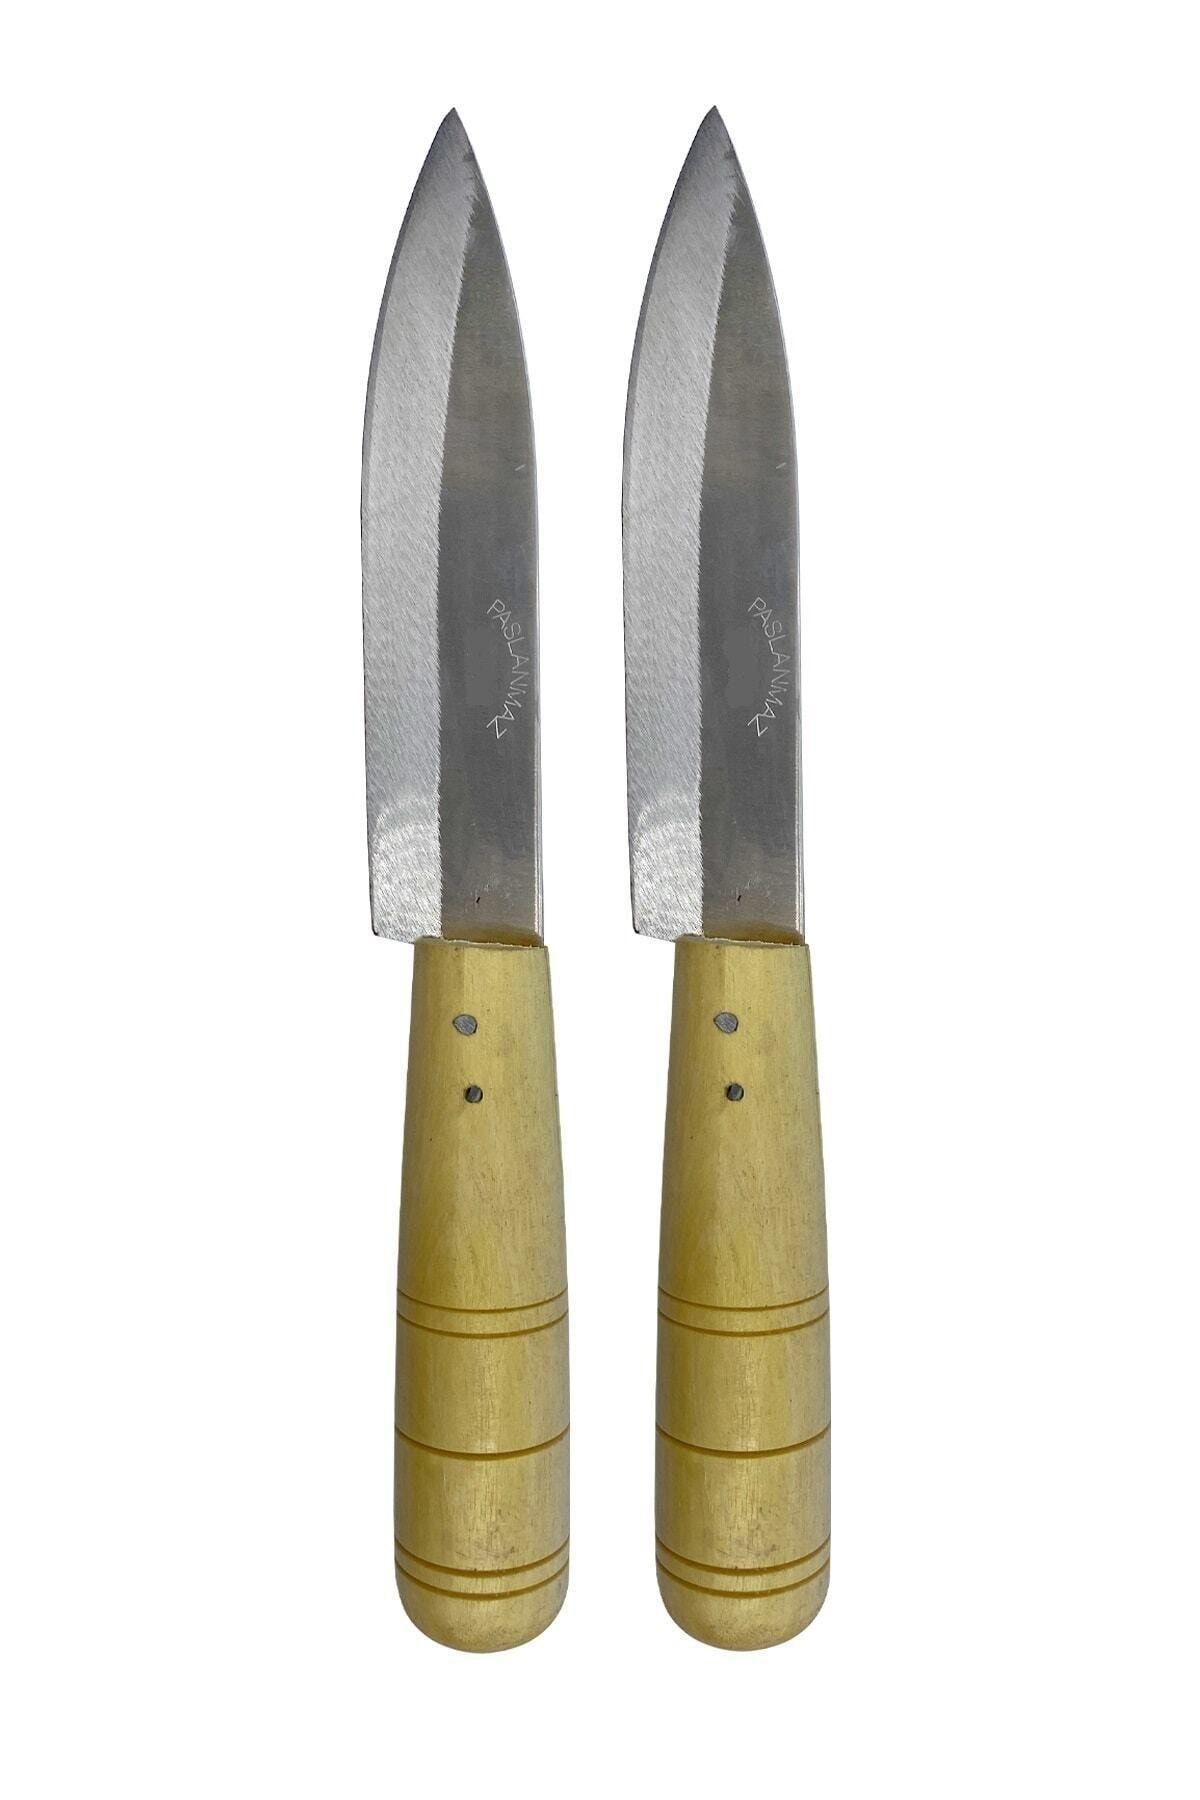 GÜZELYÜZ AVM Naim Bıçak Ahşap Saplı Paslanmaz Mutfak Bıçağı Büyük Boy 2 Adet